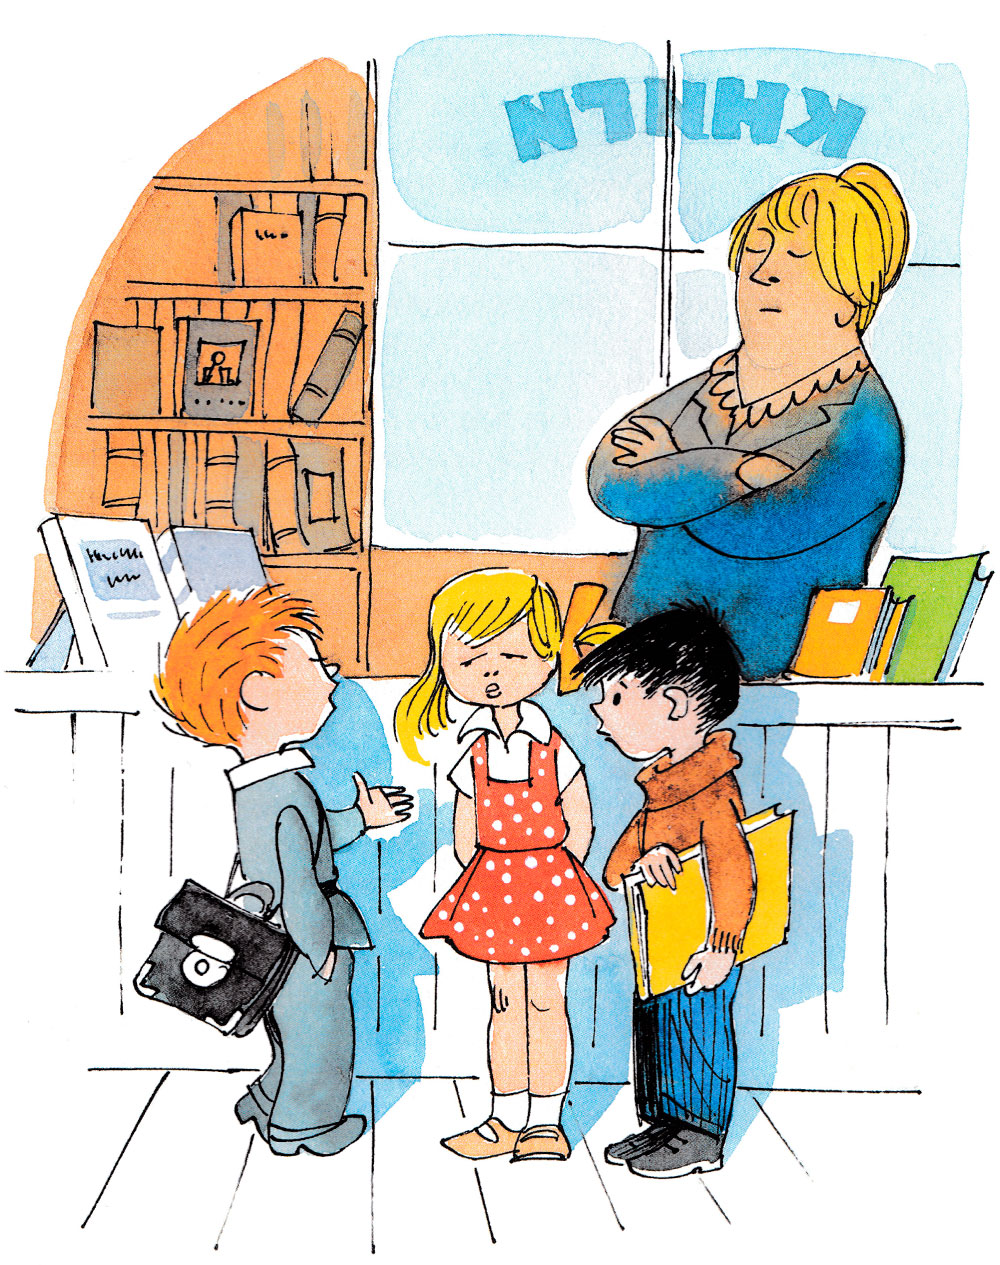 Дети в книжном магазине